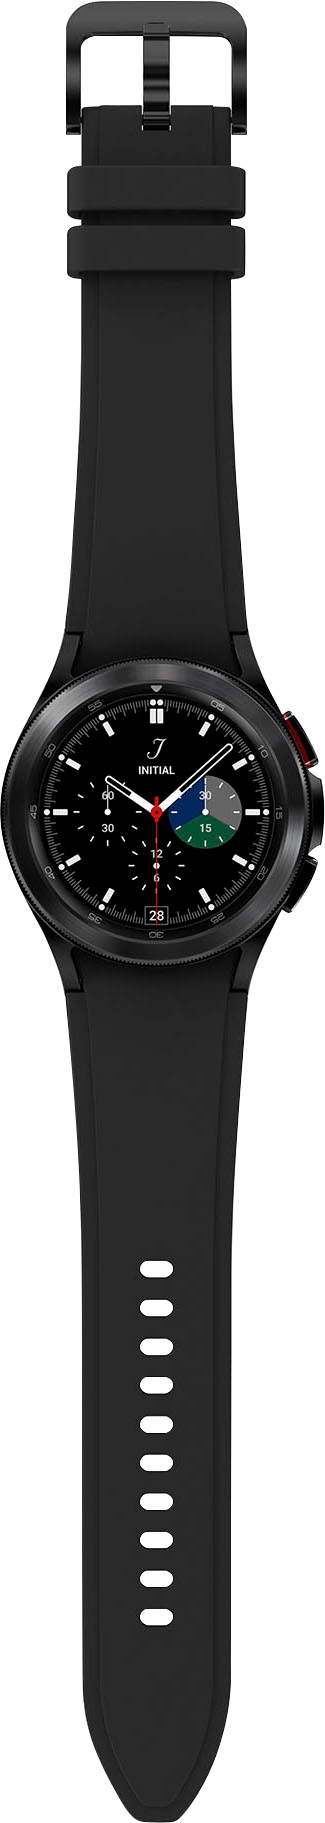 Fitness Watch Samsung OS Tracker, »Galaxy Google BAUR Uhr, Fitness 4 | Smartwatch classic-42mm (Wear BT«, by Gesundheitsfunktionen)